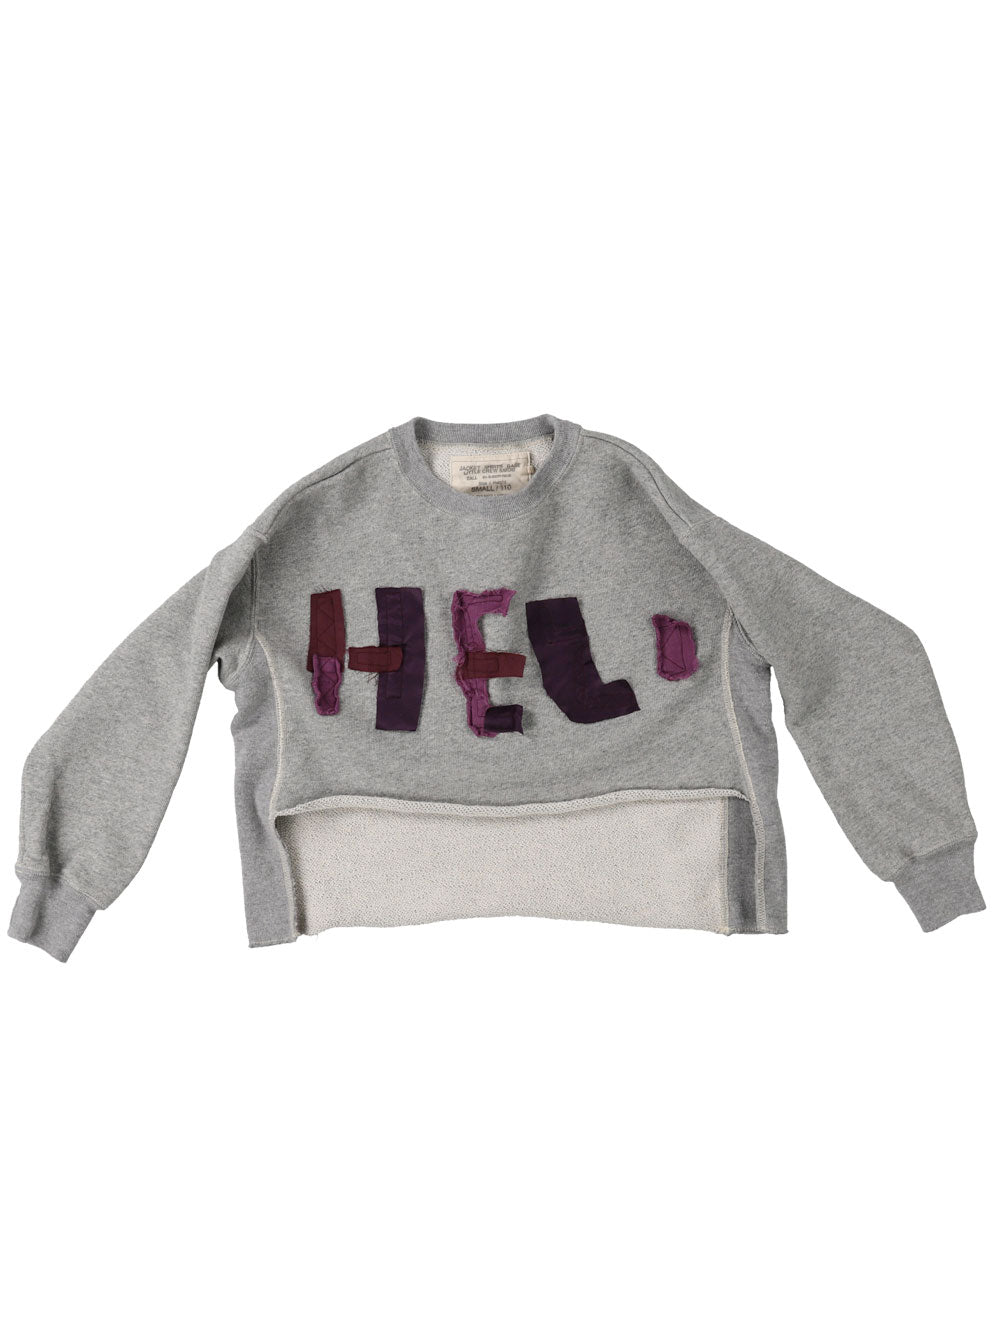 Grey HELLO Sweatshirt